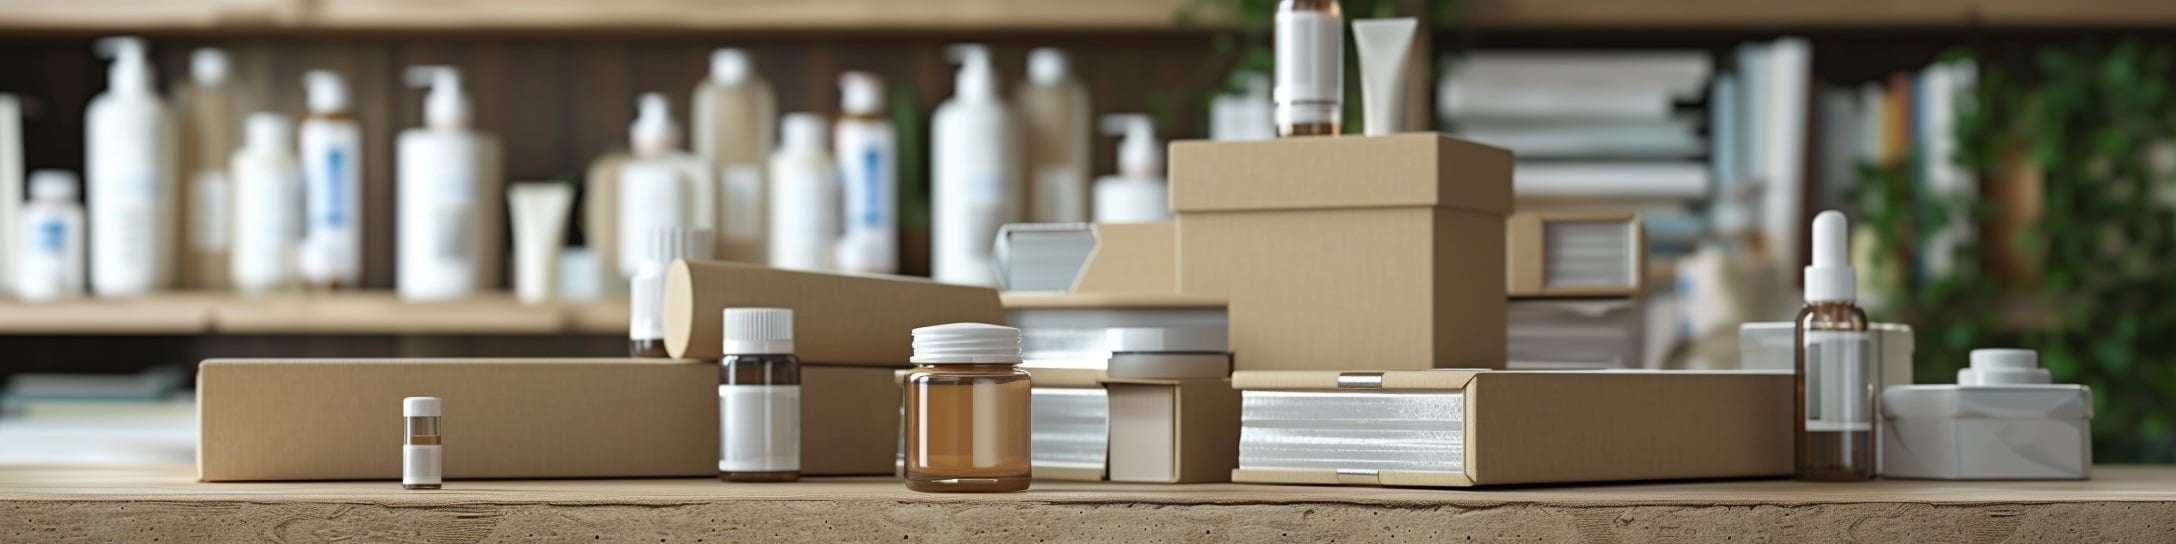 Kartoninės dėžutės ant stalo paviršiaus, šalia kosmetikos produktai paruošti siuntimui